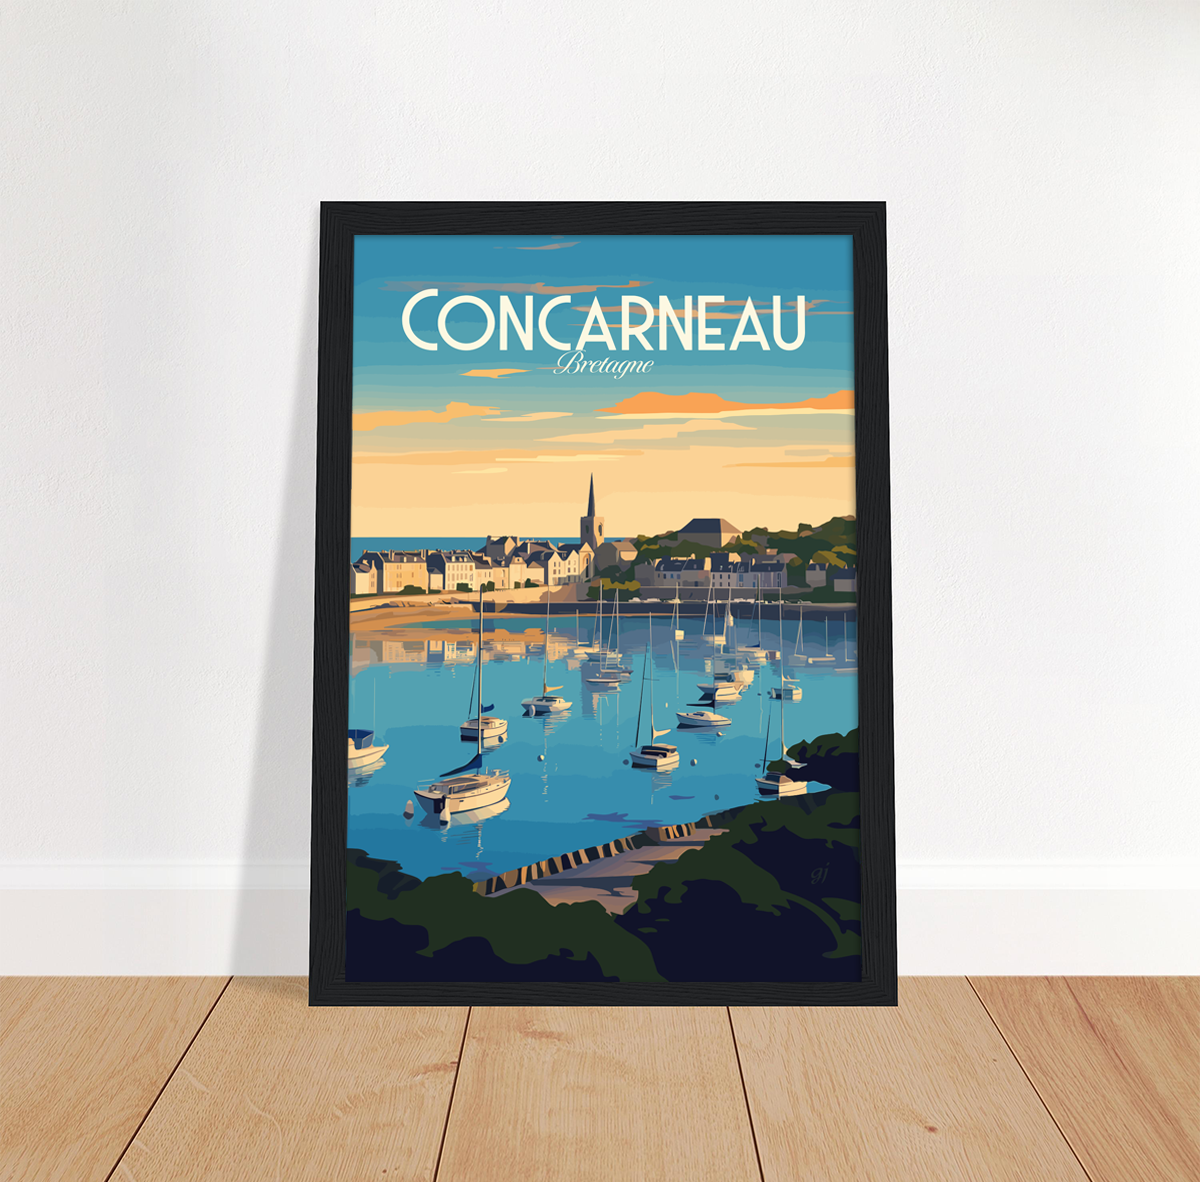 Concarneau poster by bon voyage design